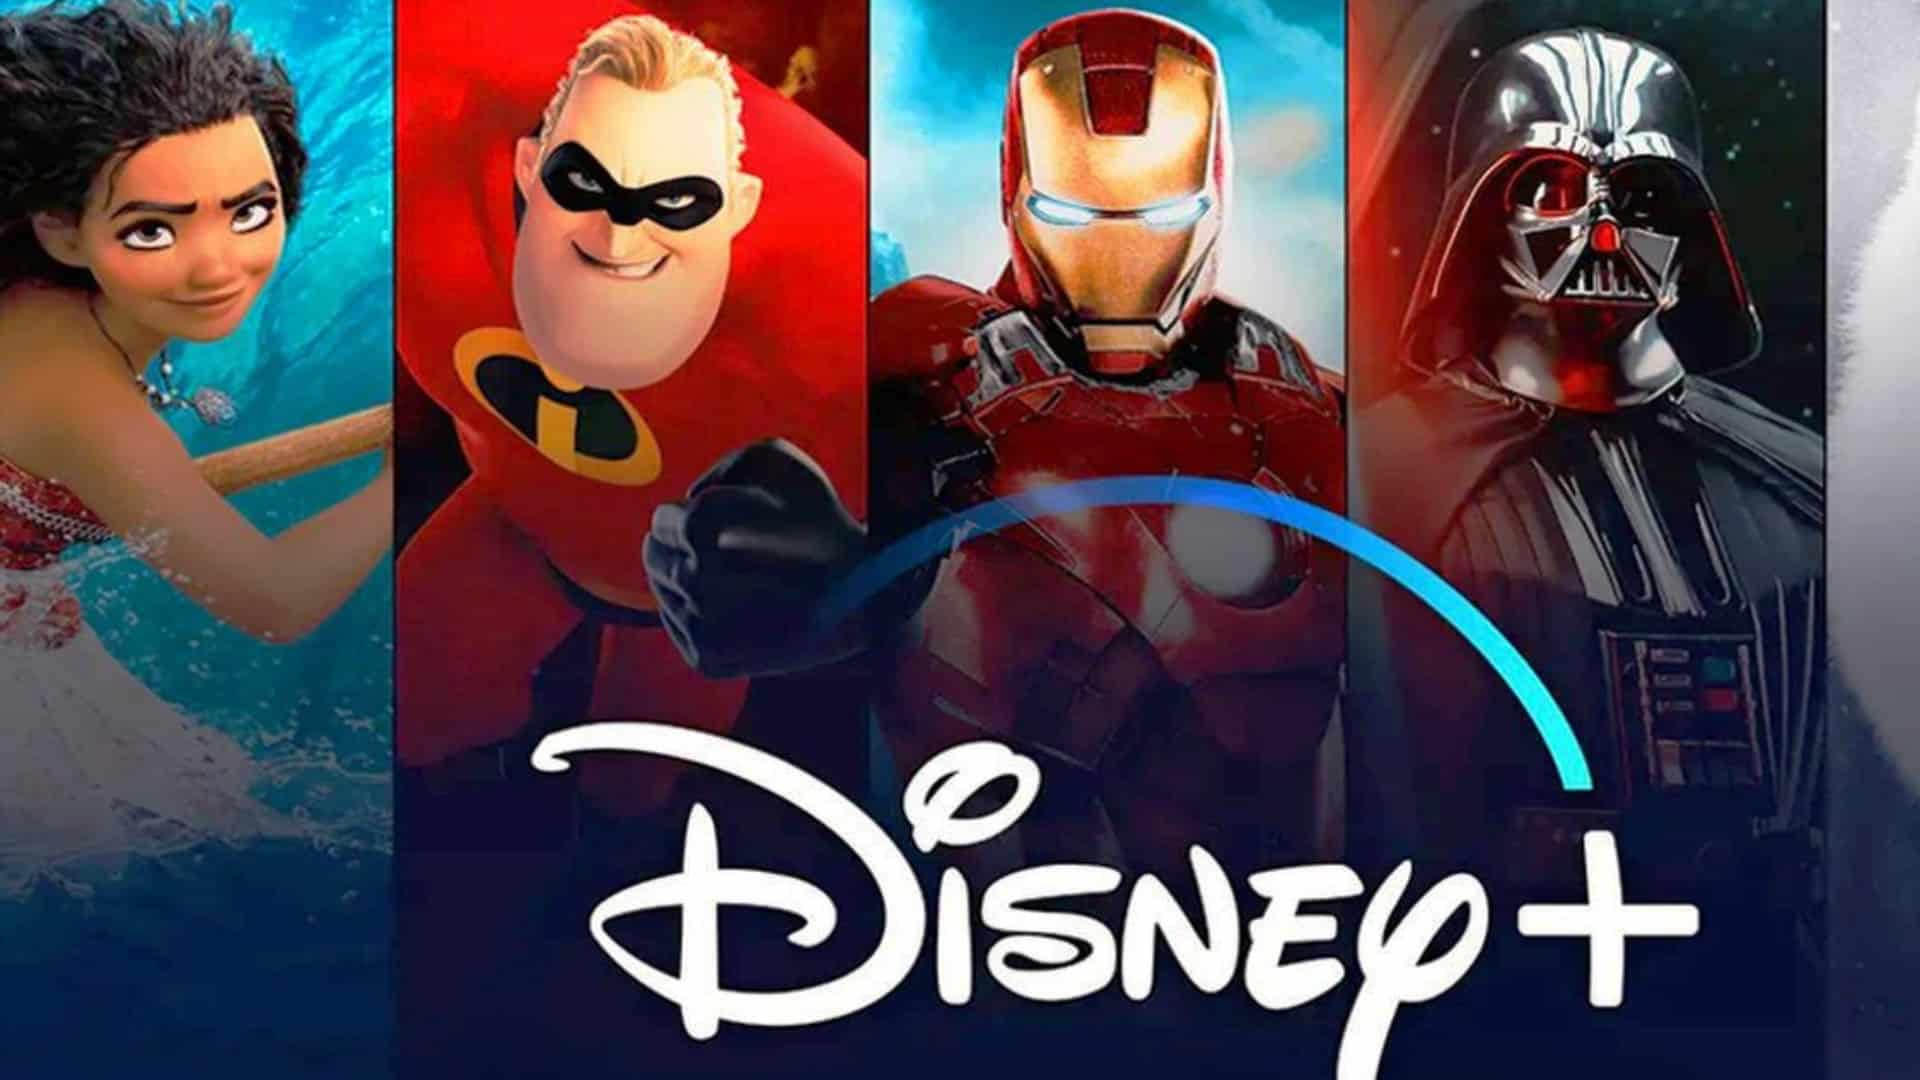 Disney-Plus-raising-prices-GamersRD (1)